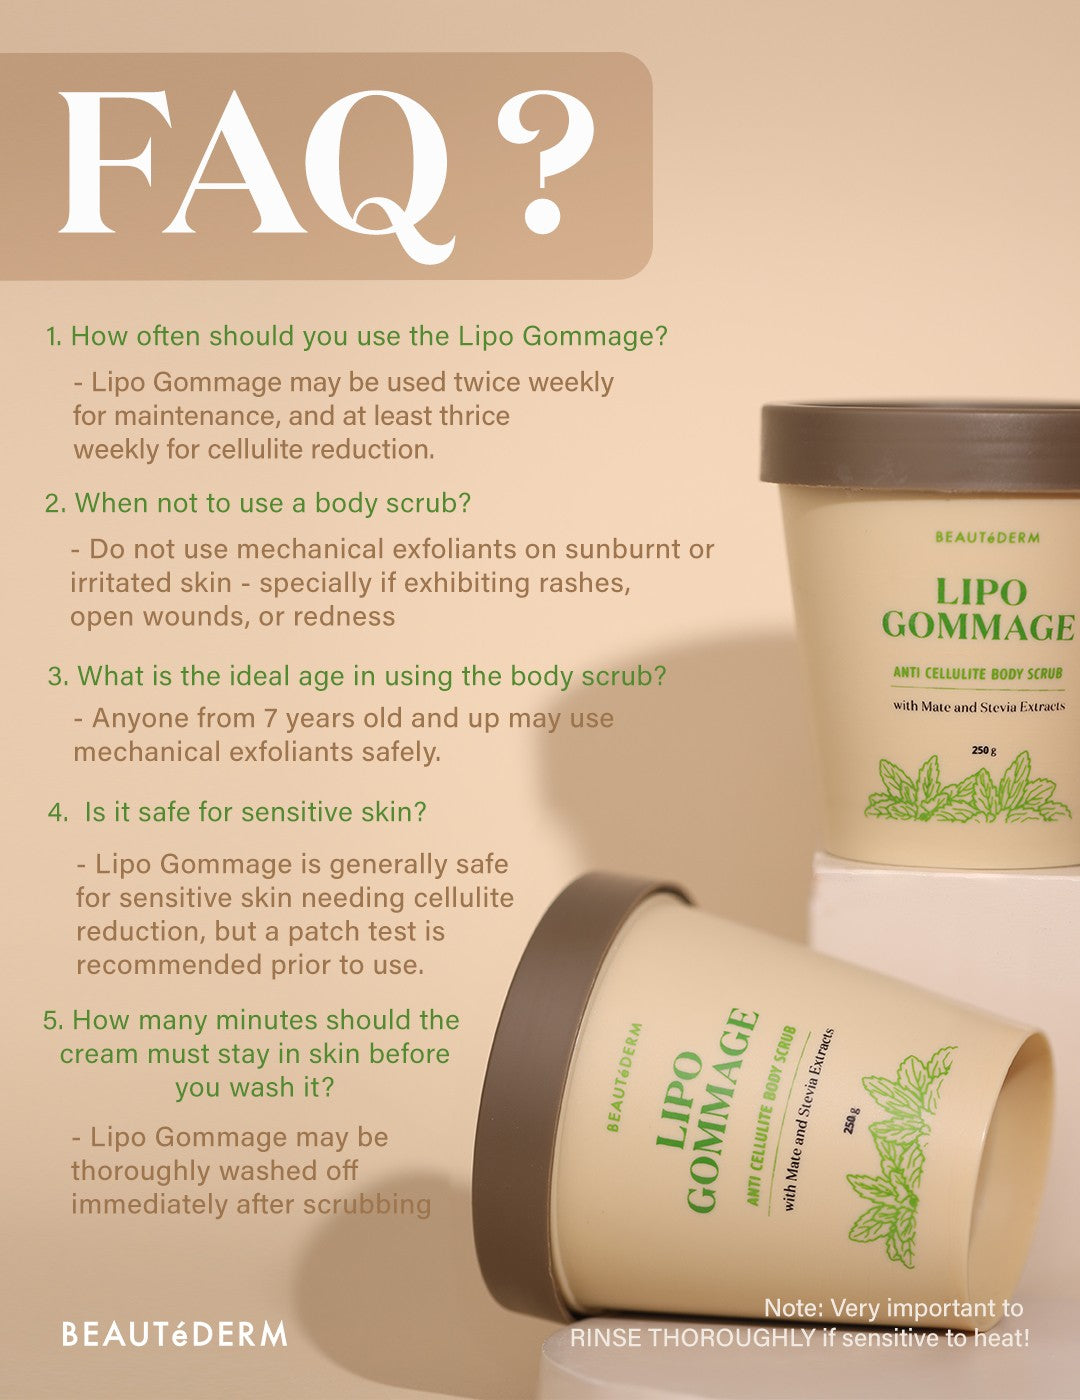 Beautederm Lipo Gommage Anti Cellulite Body Scrub FAQ